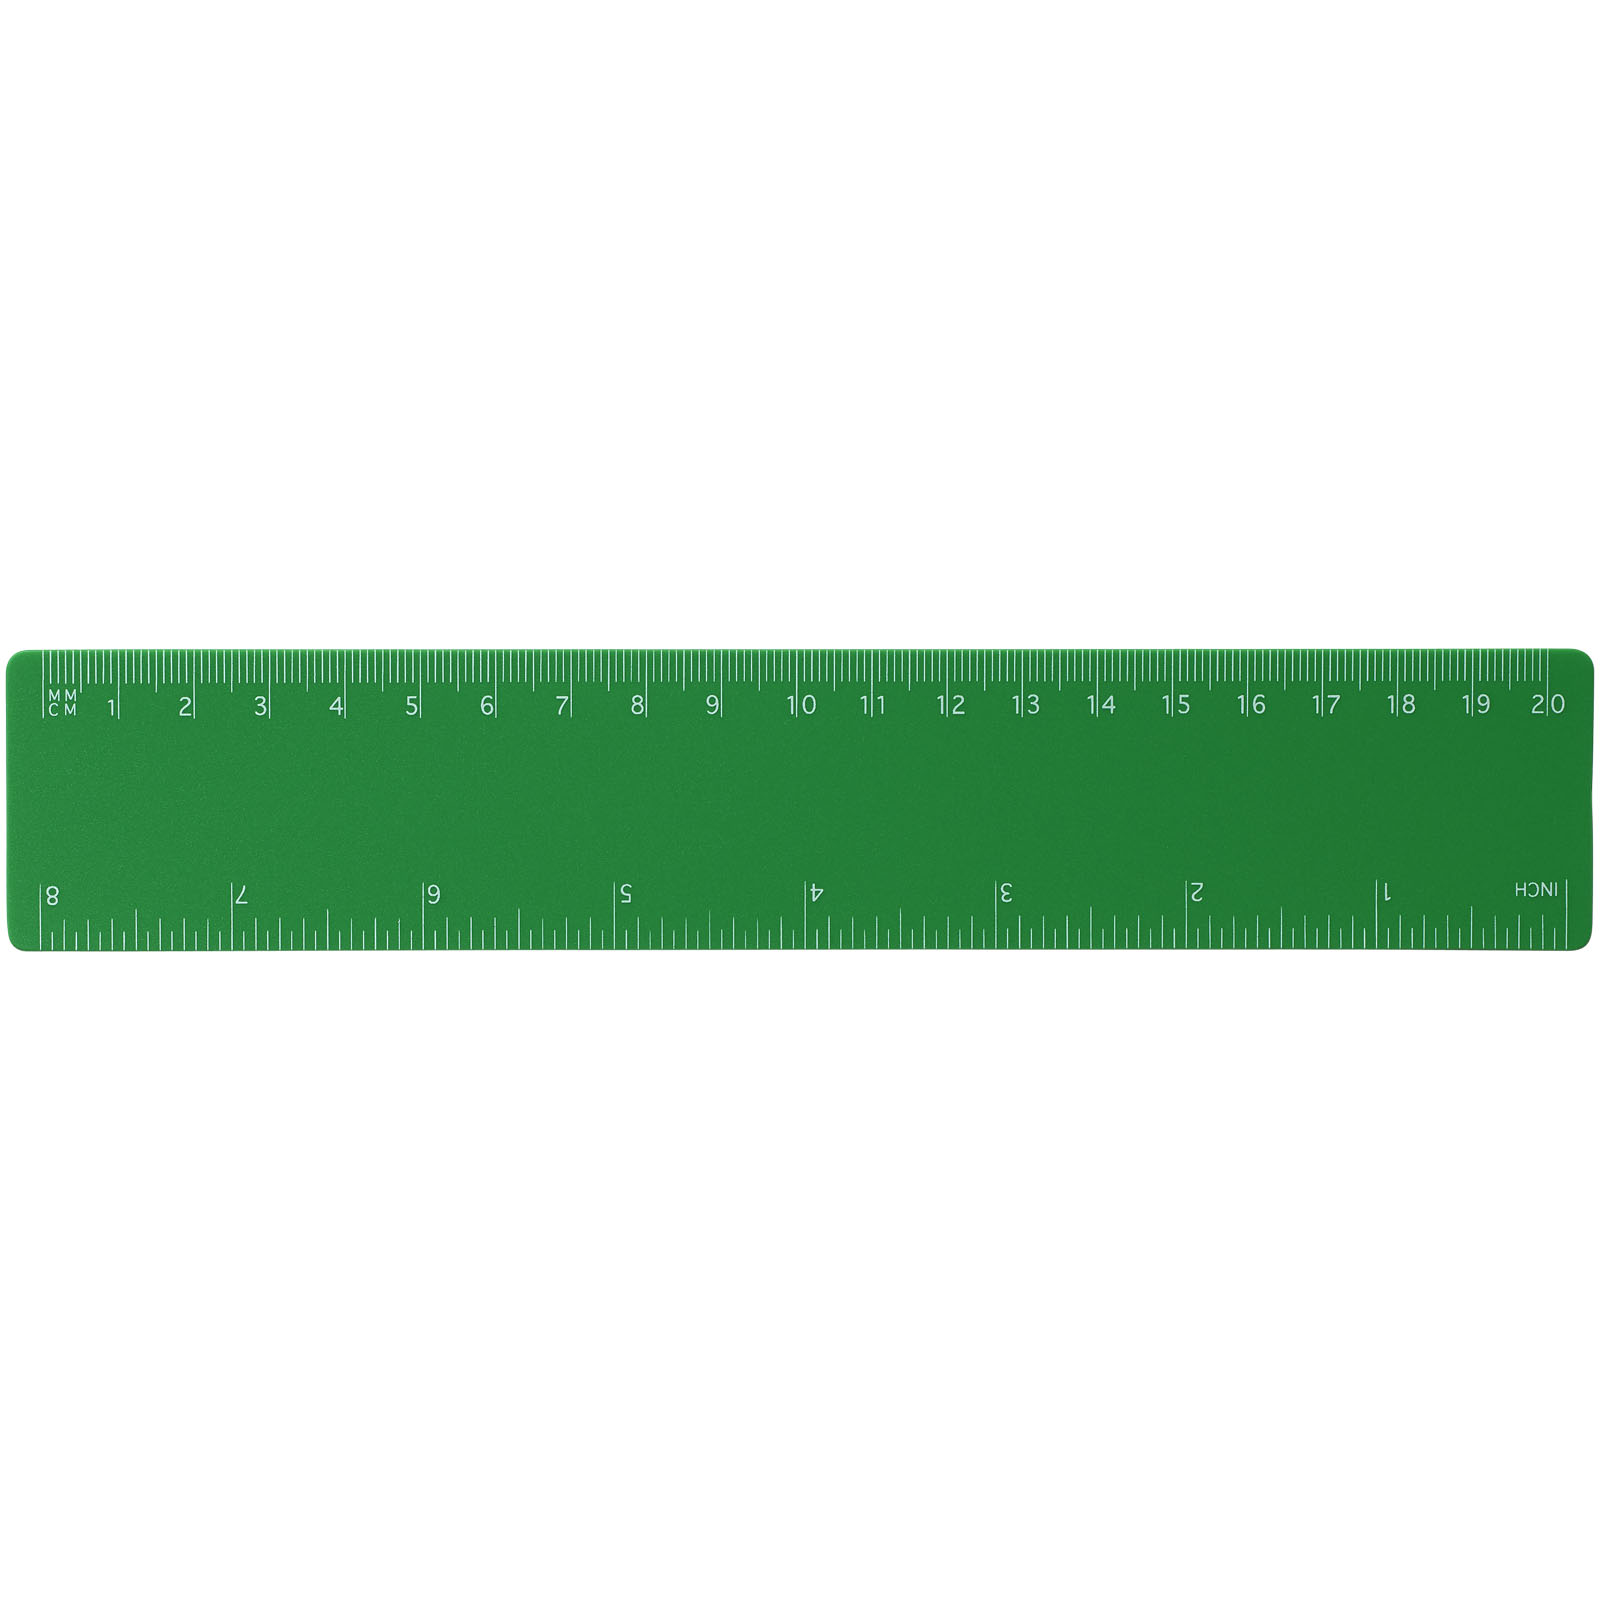 Advertising Desk Accessories - Rothko 20 cm plastic ruler - 1